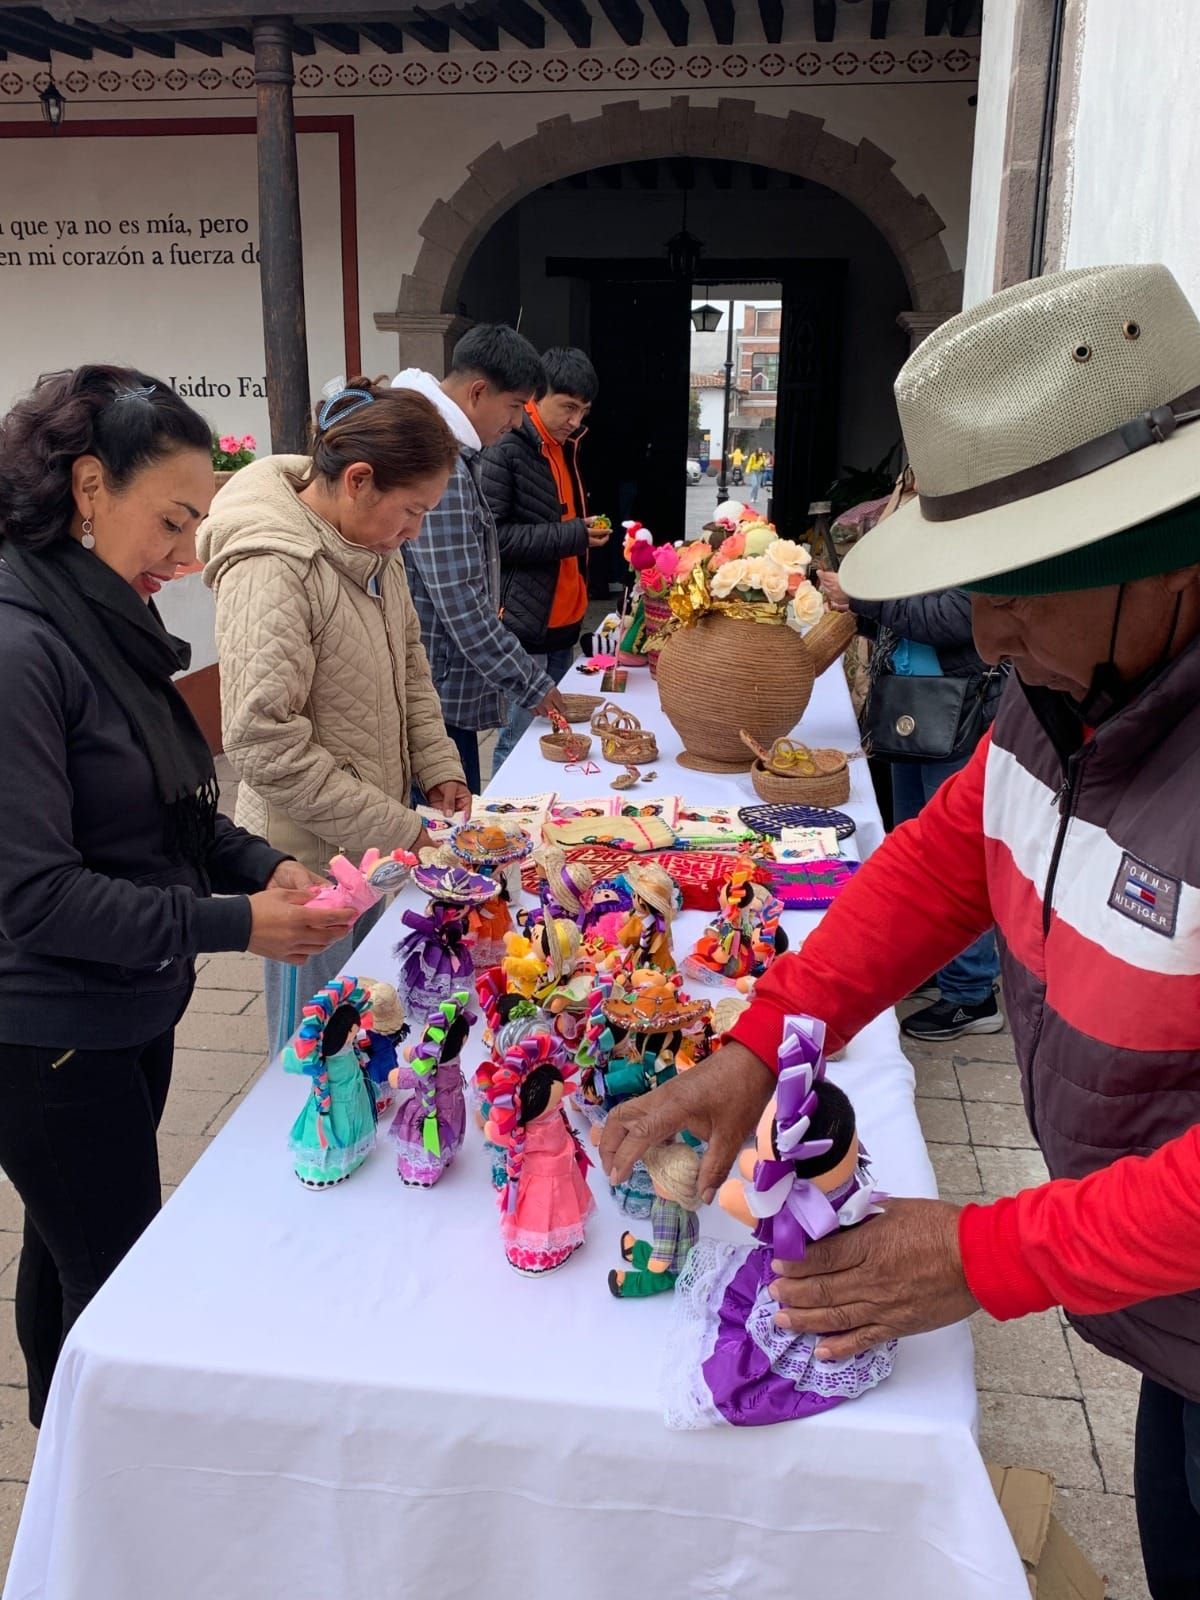 Los Centros Regionales de Cultura de Atlacomulco y Tenancingo Invitan a Disfrutar del Mercado Alternativo este Fin de Semana

